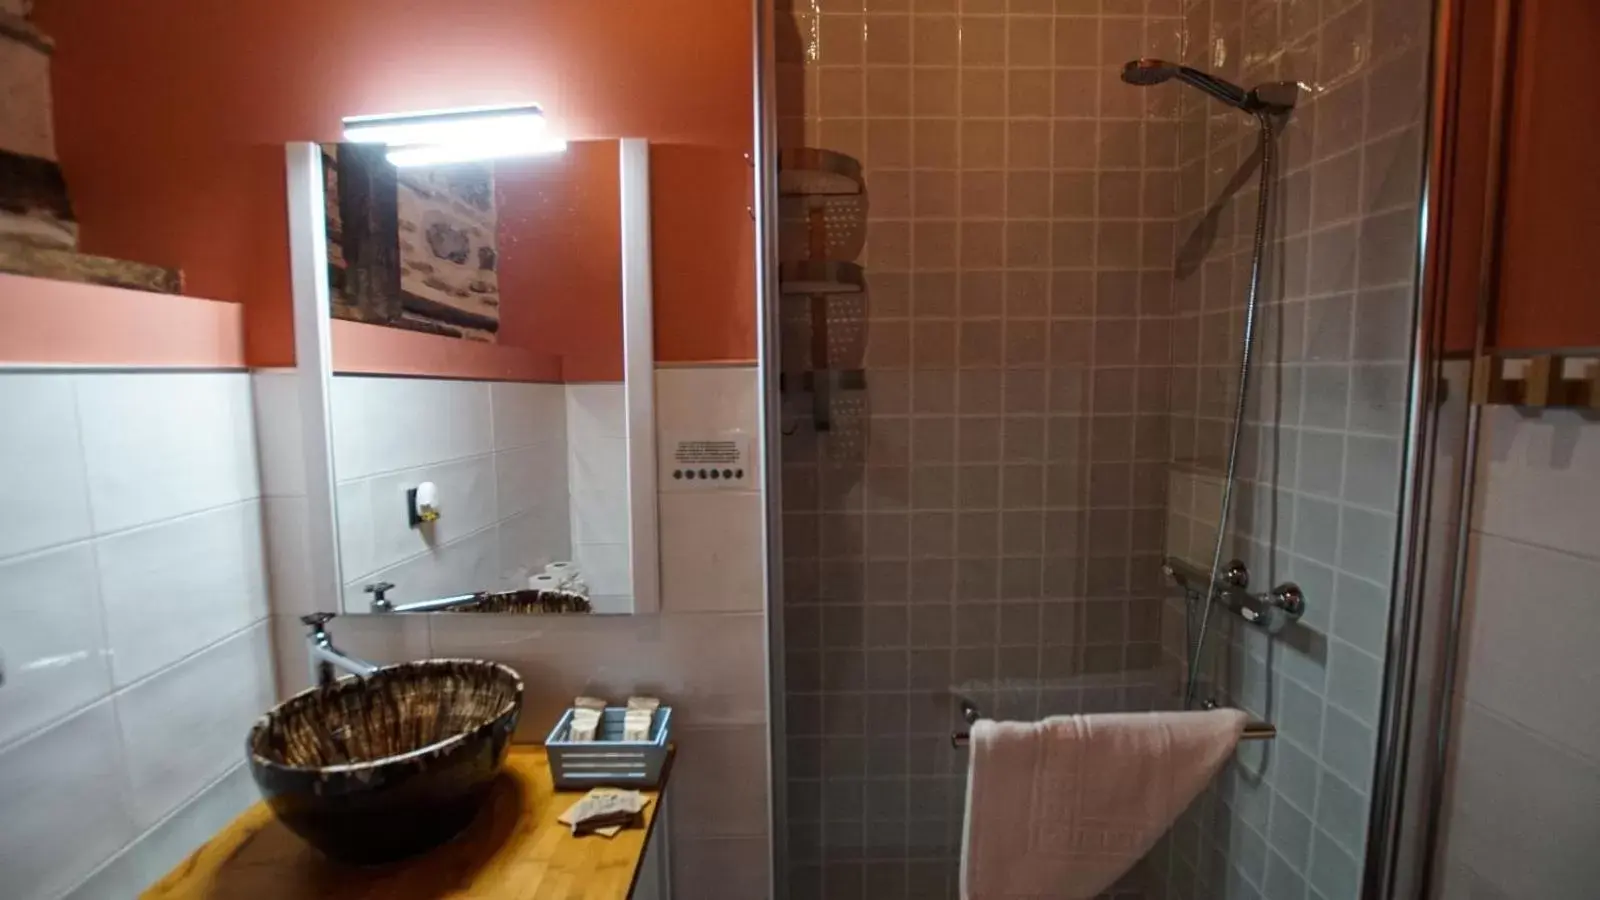 Bathroom in Tiempo de Toledo